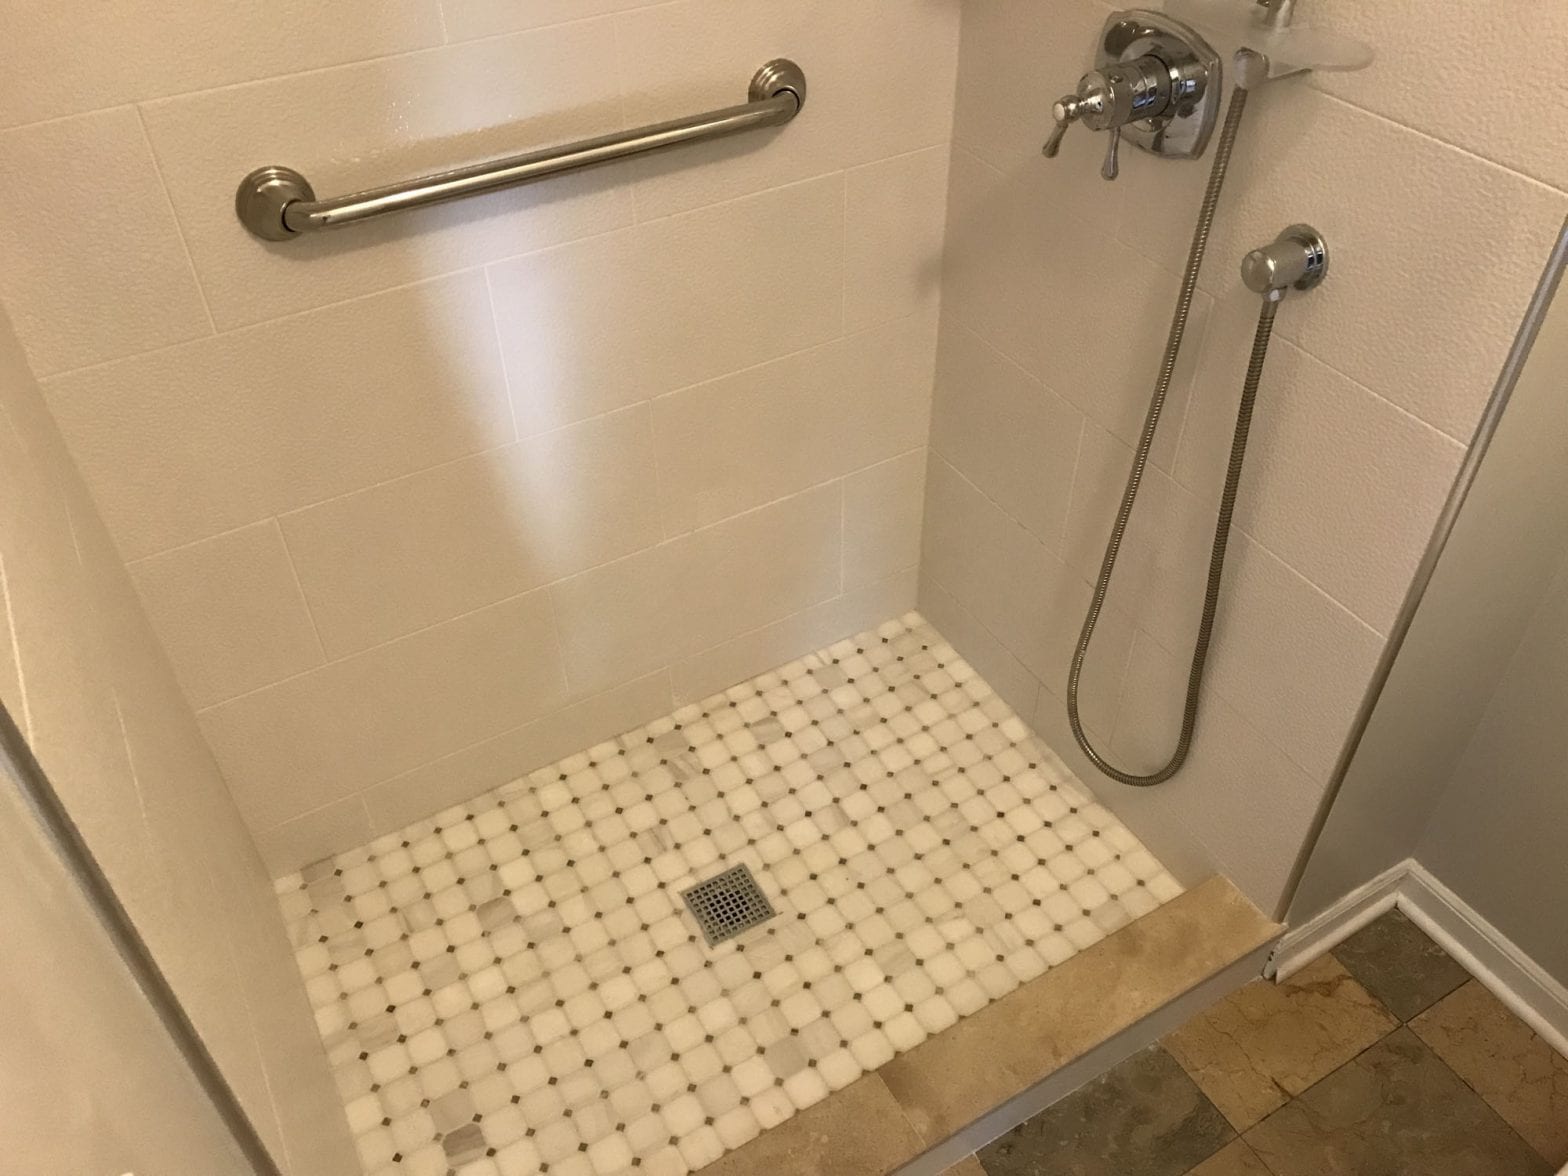 Shower remodeling in Schaumburg - new shower base, tile